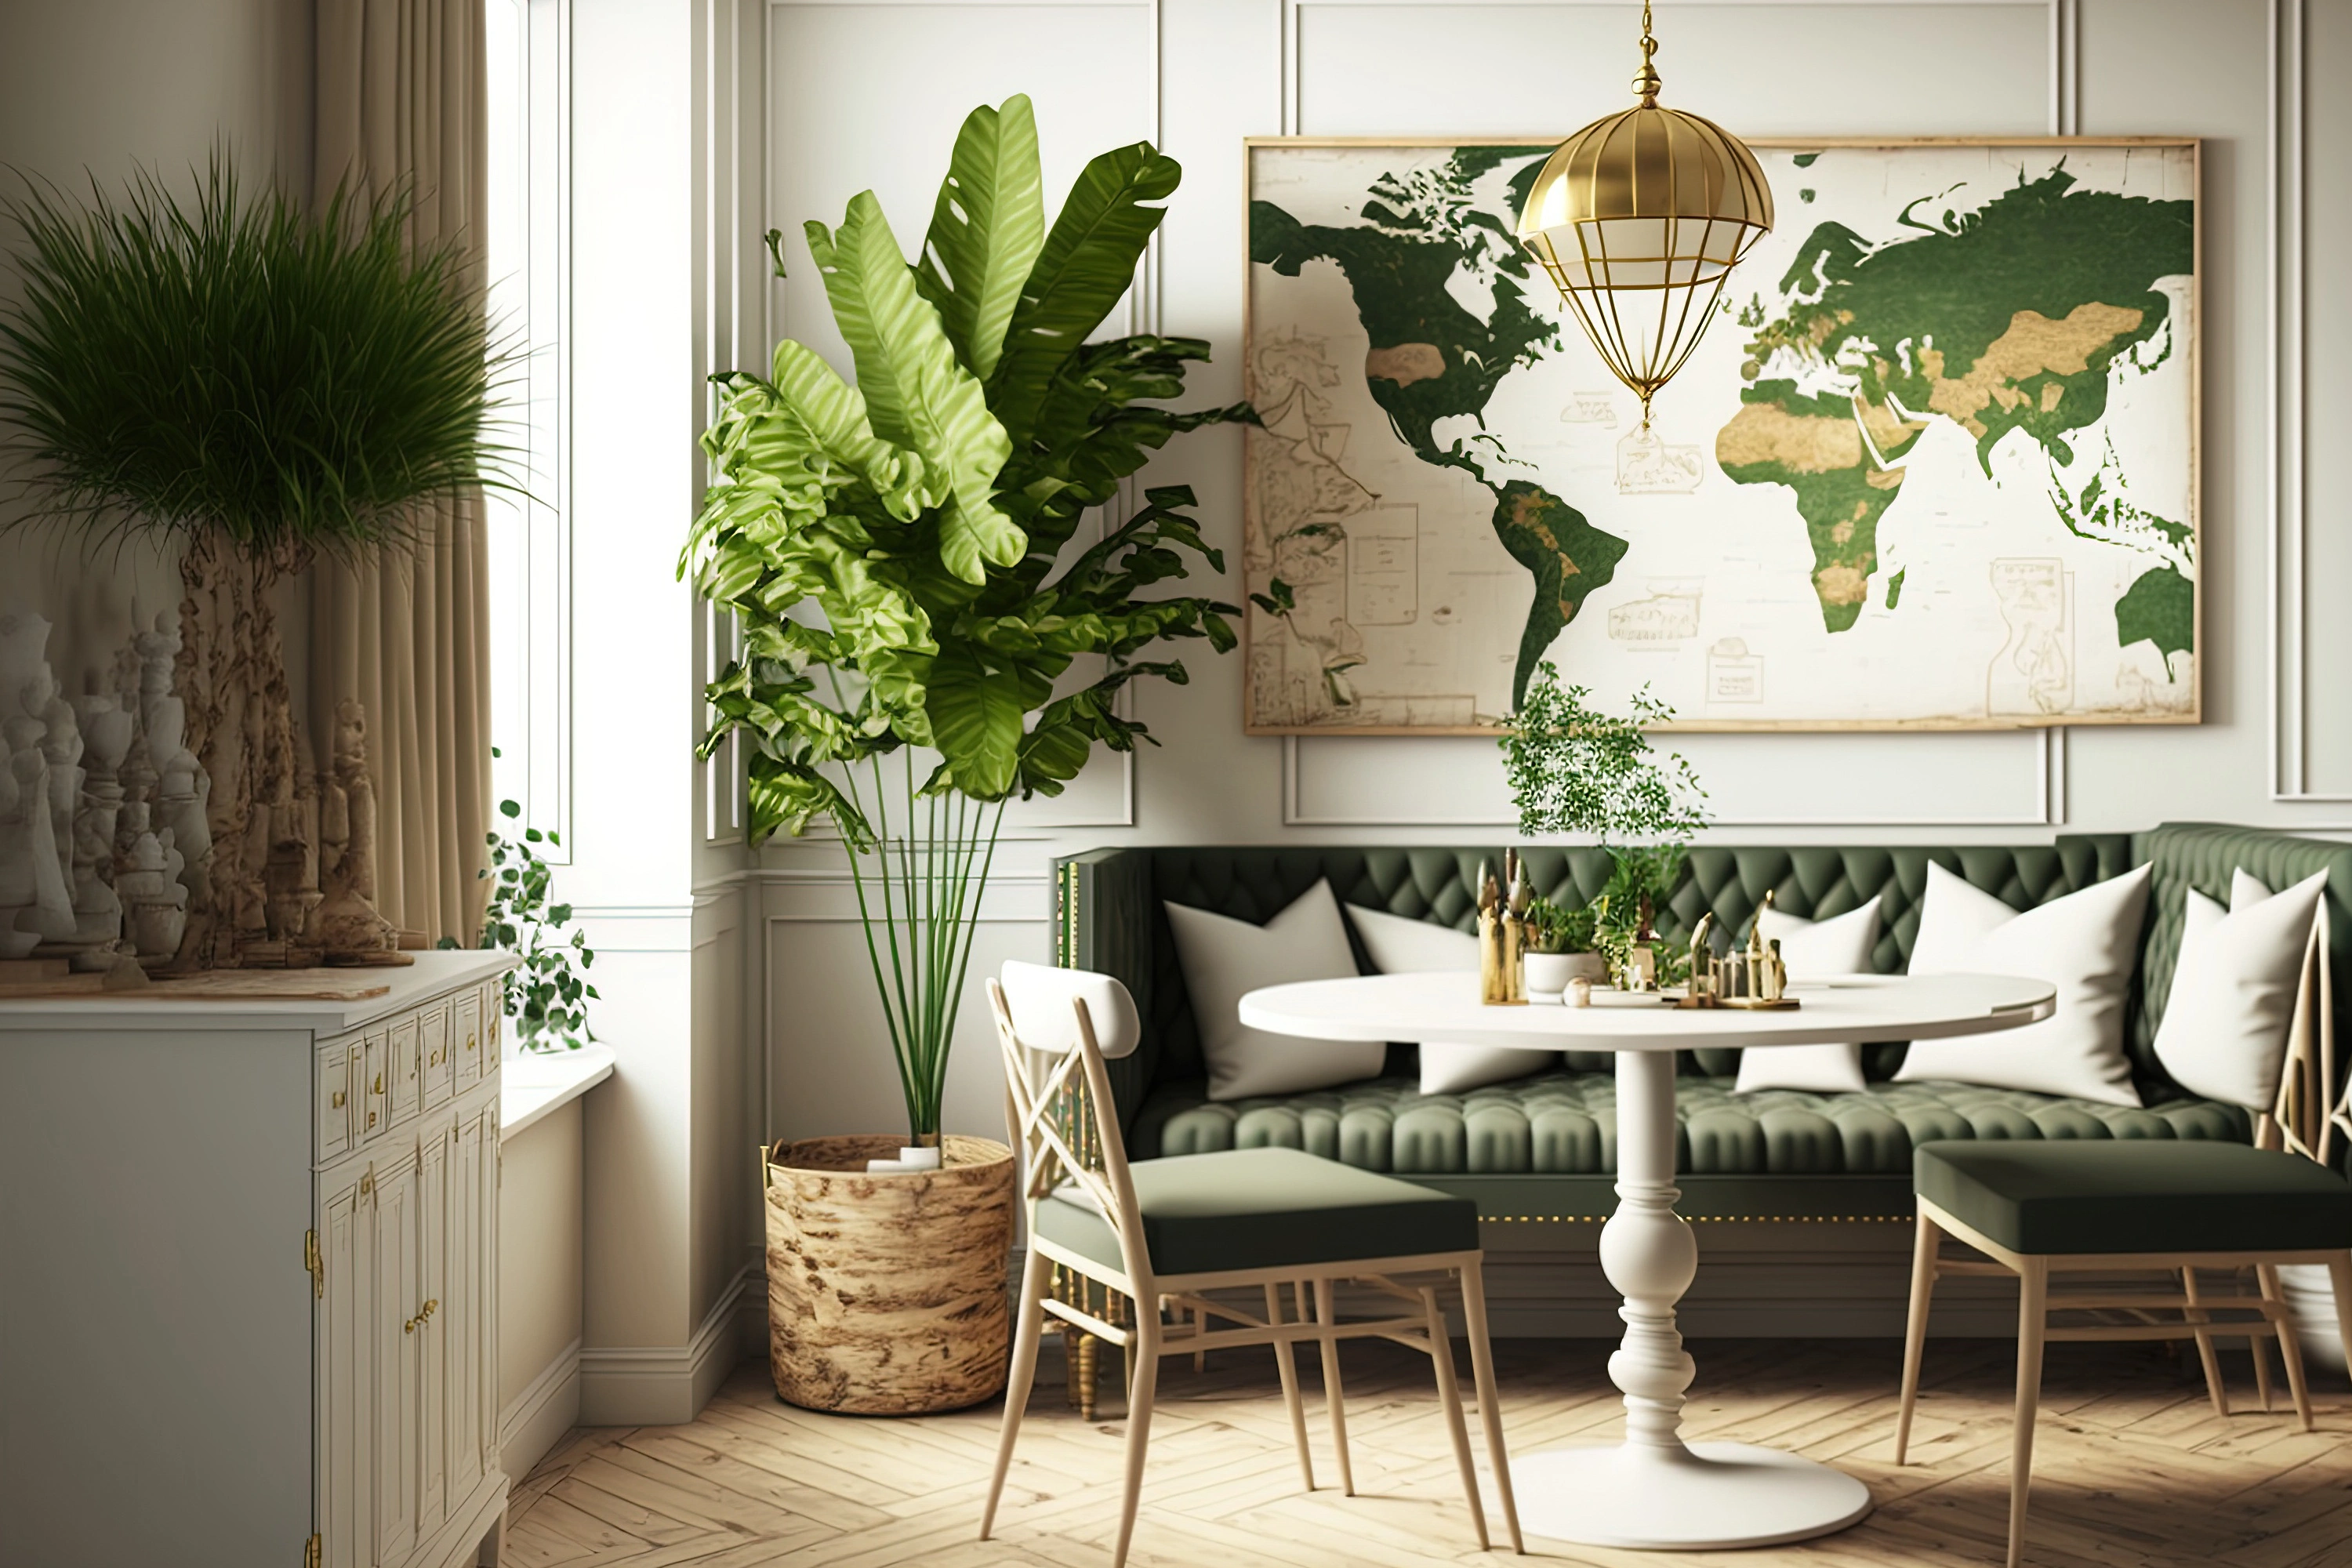 Inspiracja prezentująca salon w kolorze zielonym z mapą na scianie, styl kolonialny. Element charakterystyczny: mapa na ścianie